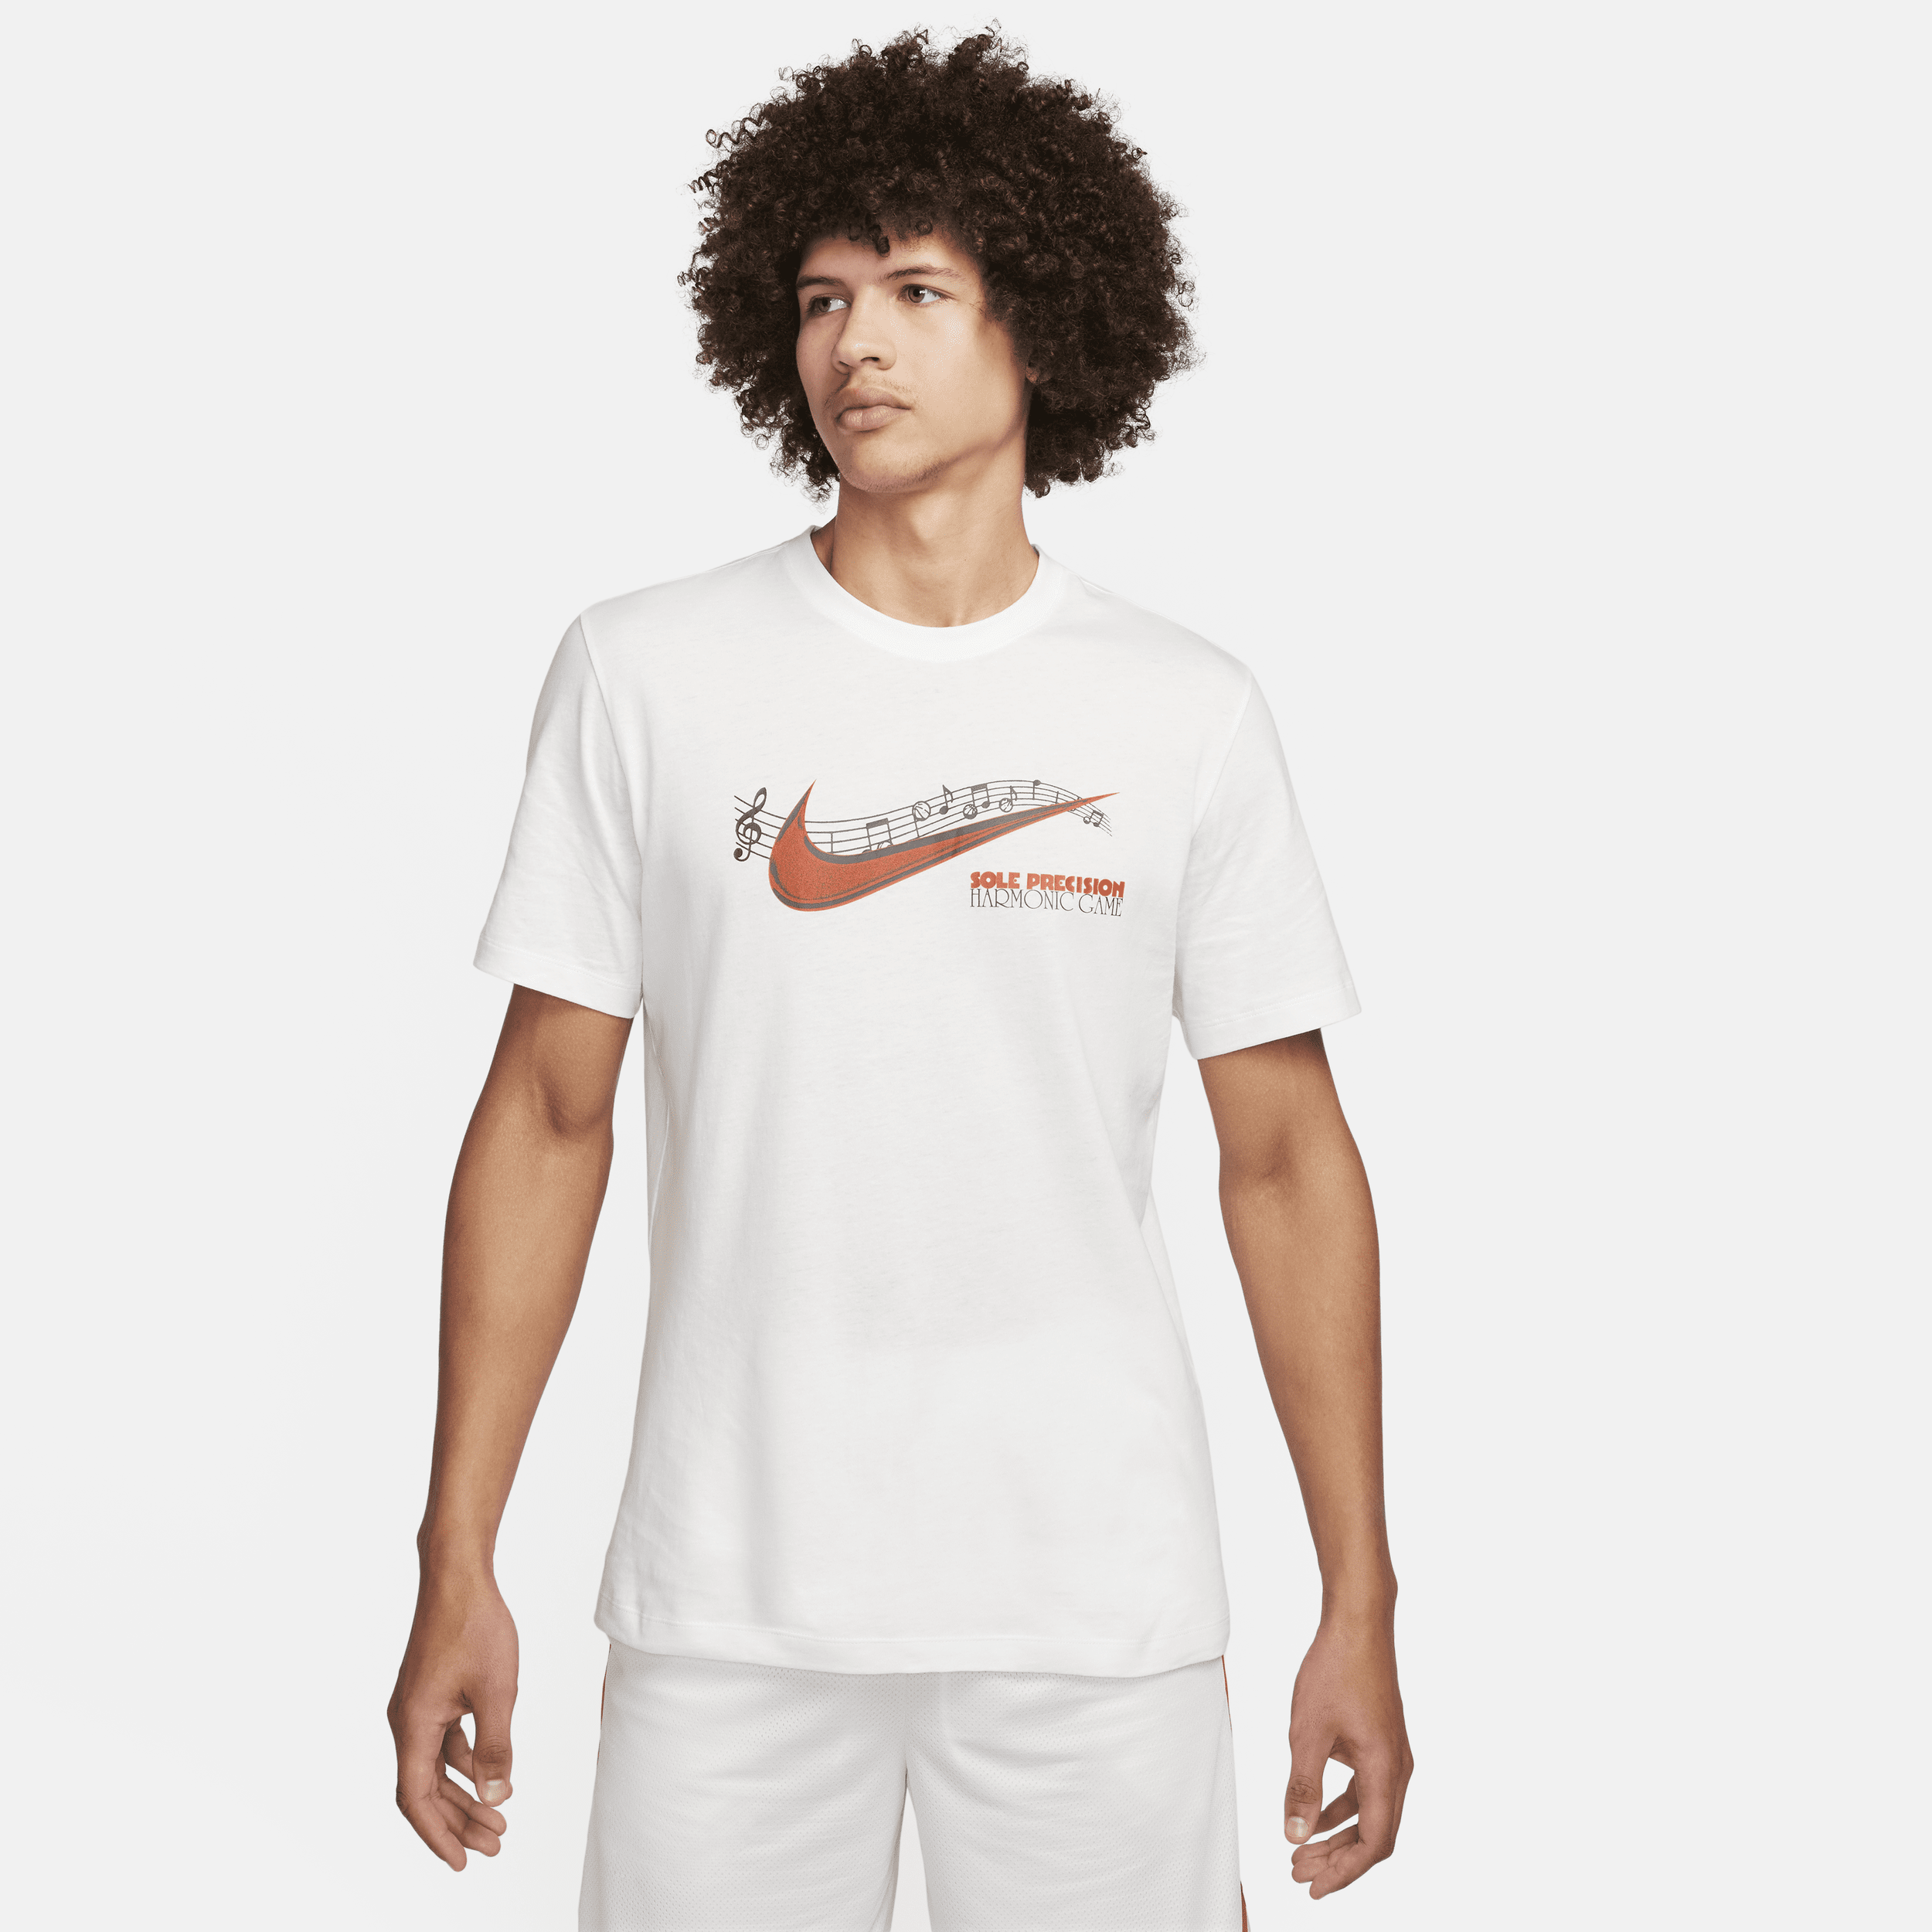 Nike Basketbalshirt voor heren - Wit